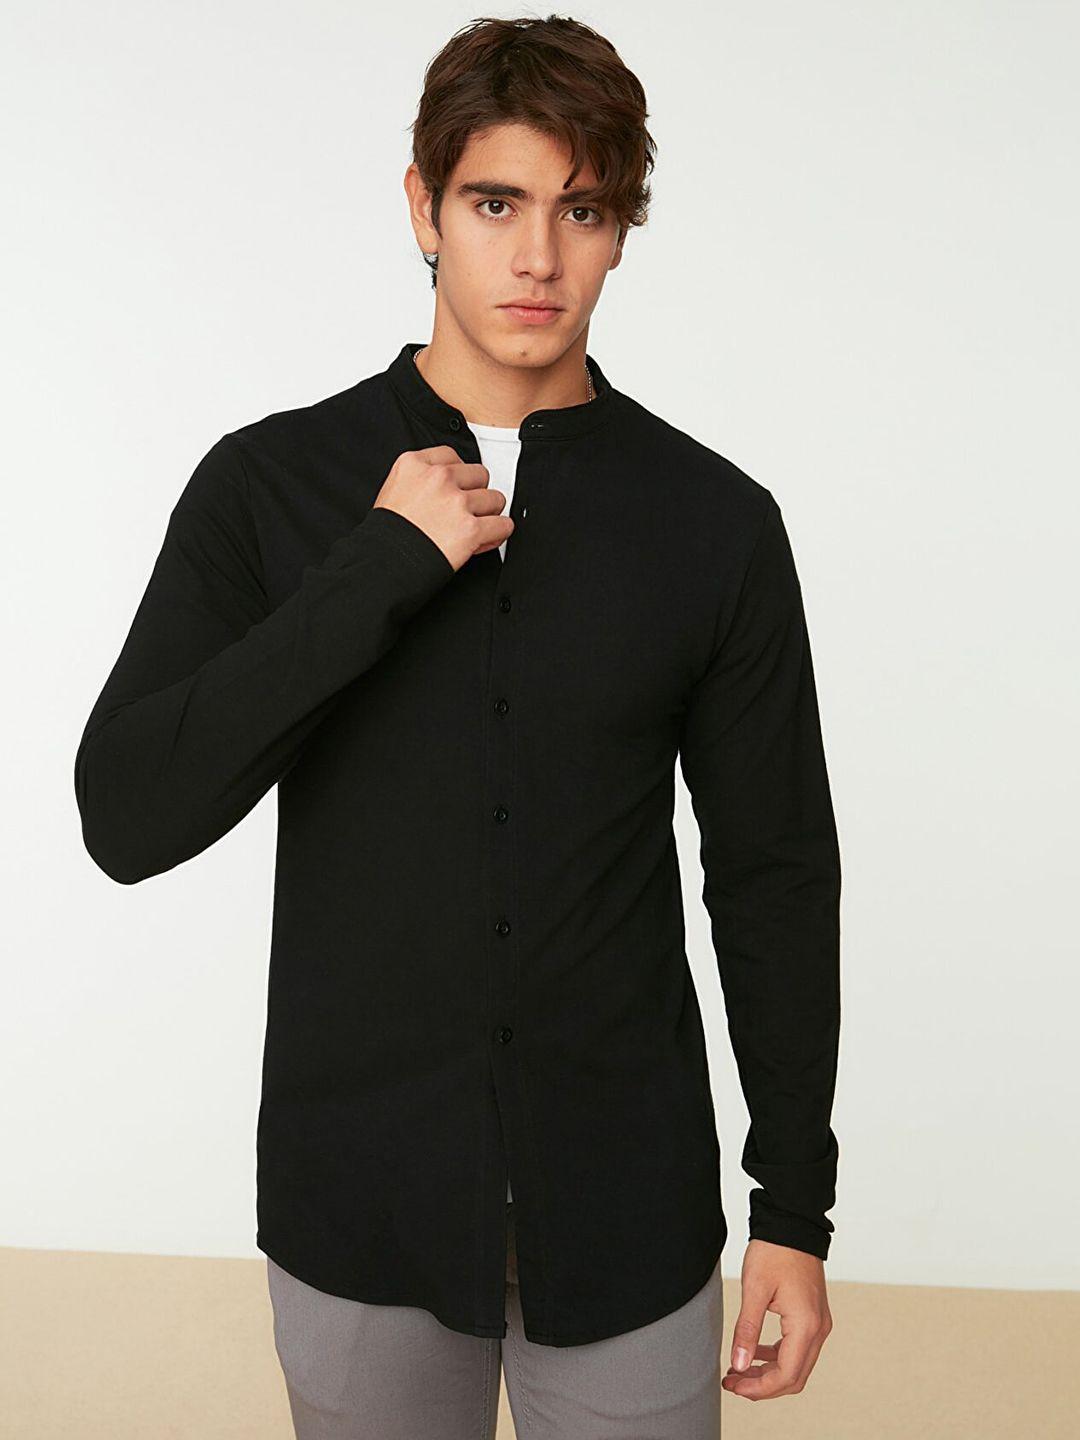 trendyol men black pure cotton solid slim fit pique knit casual shirt